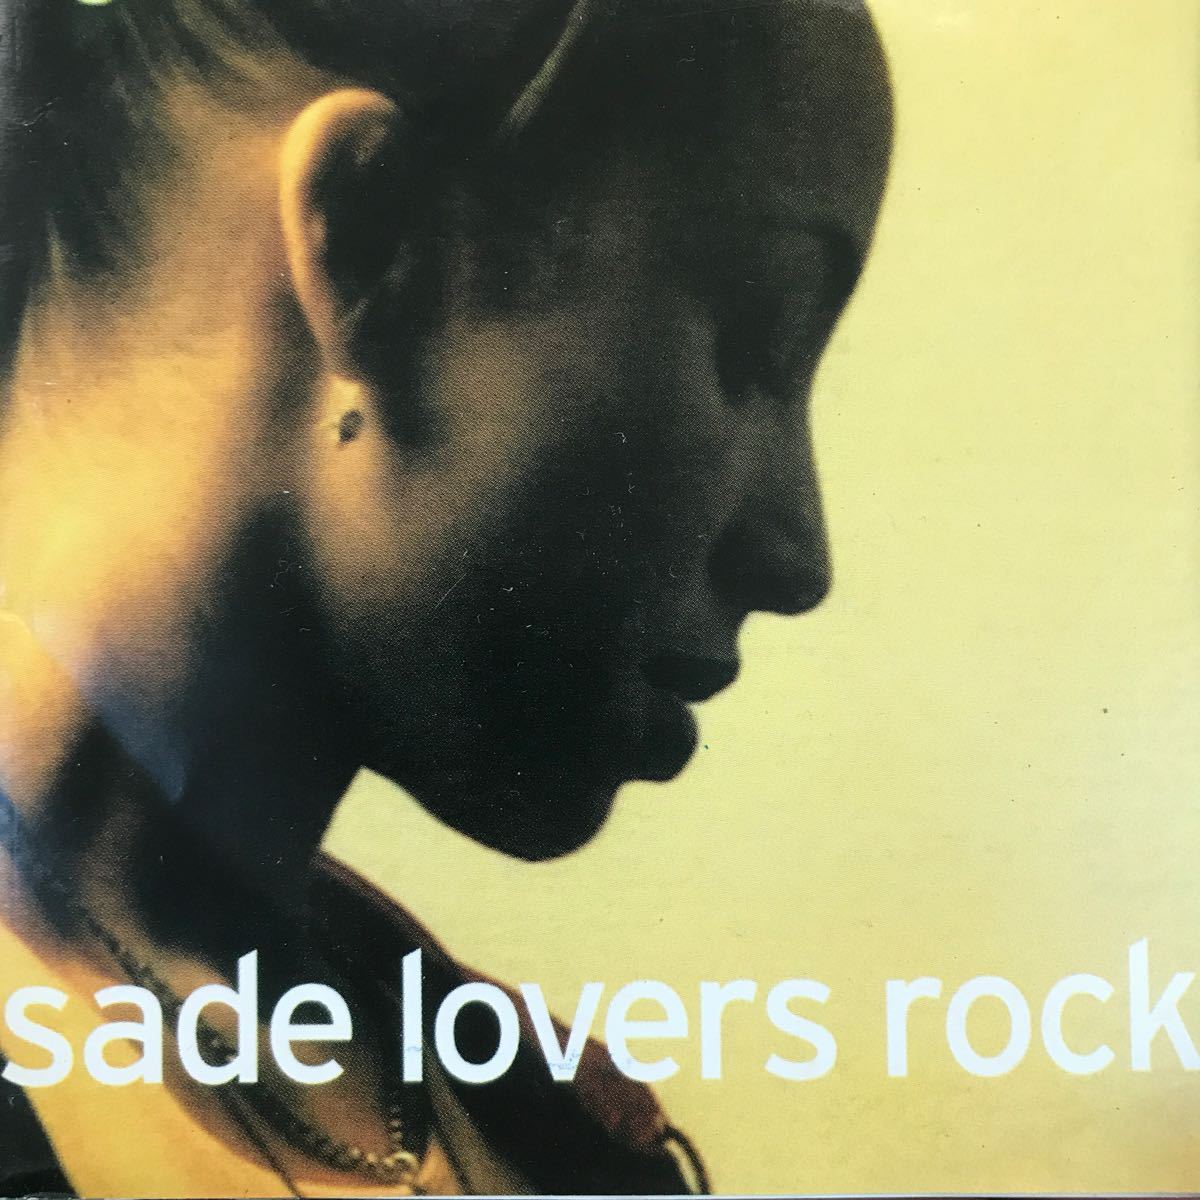 Yahoo!オークション -「sade lovers rock」(音楽) の落札相場・落札価格